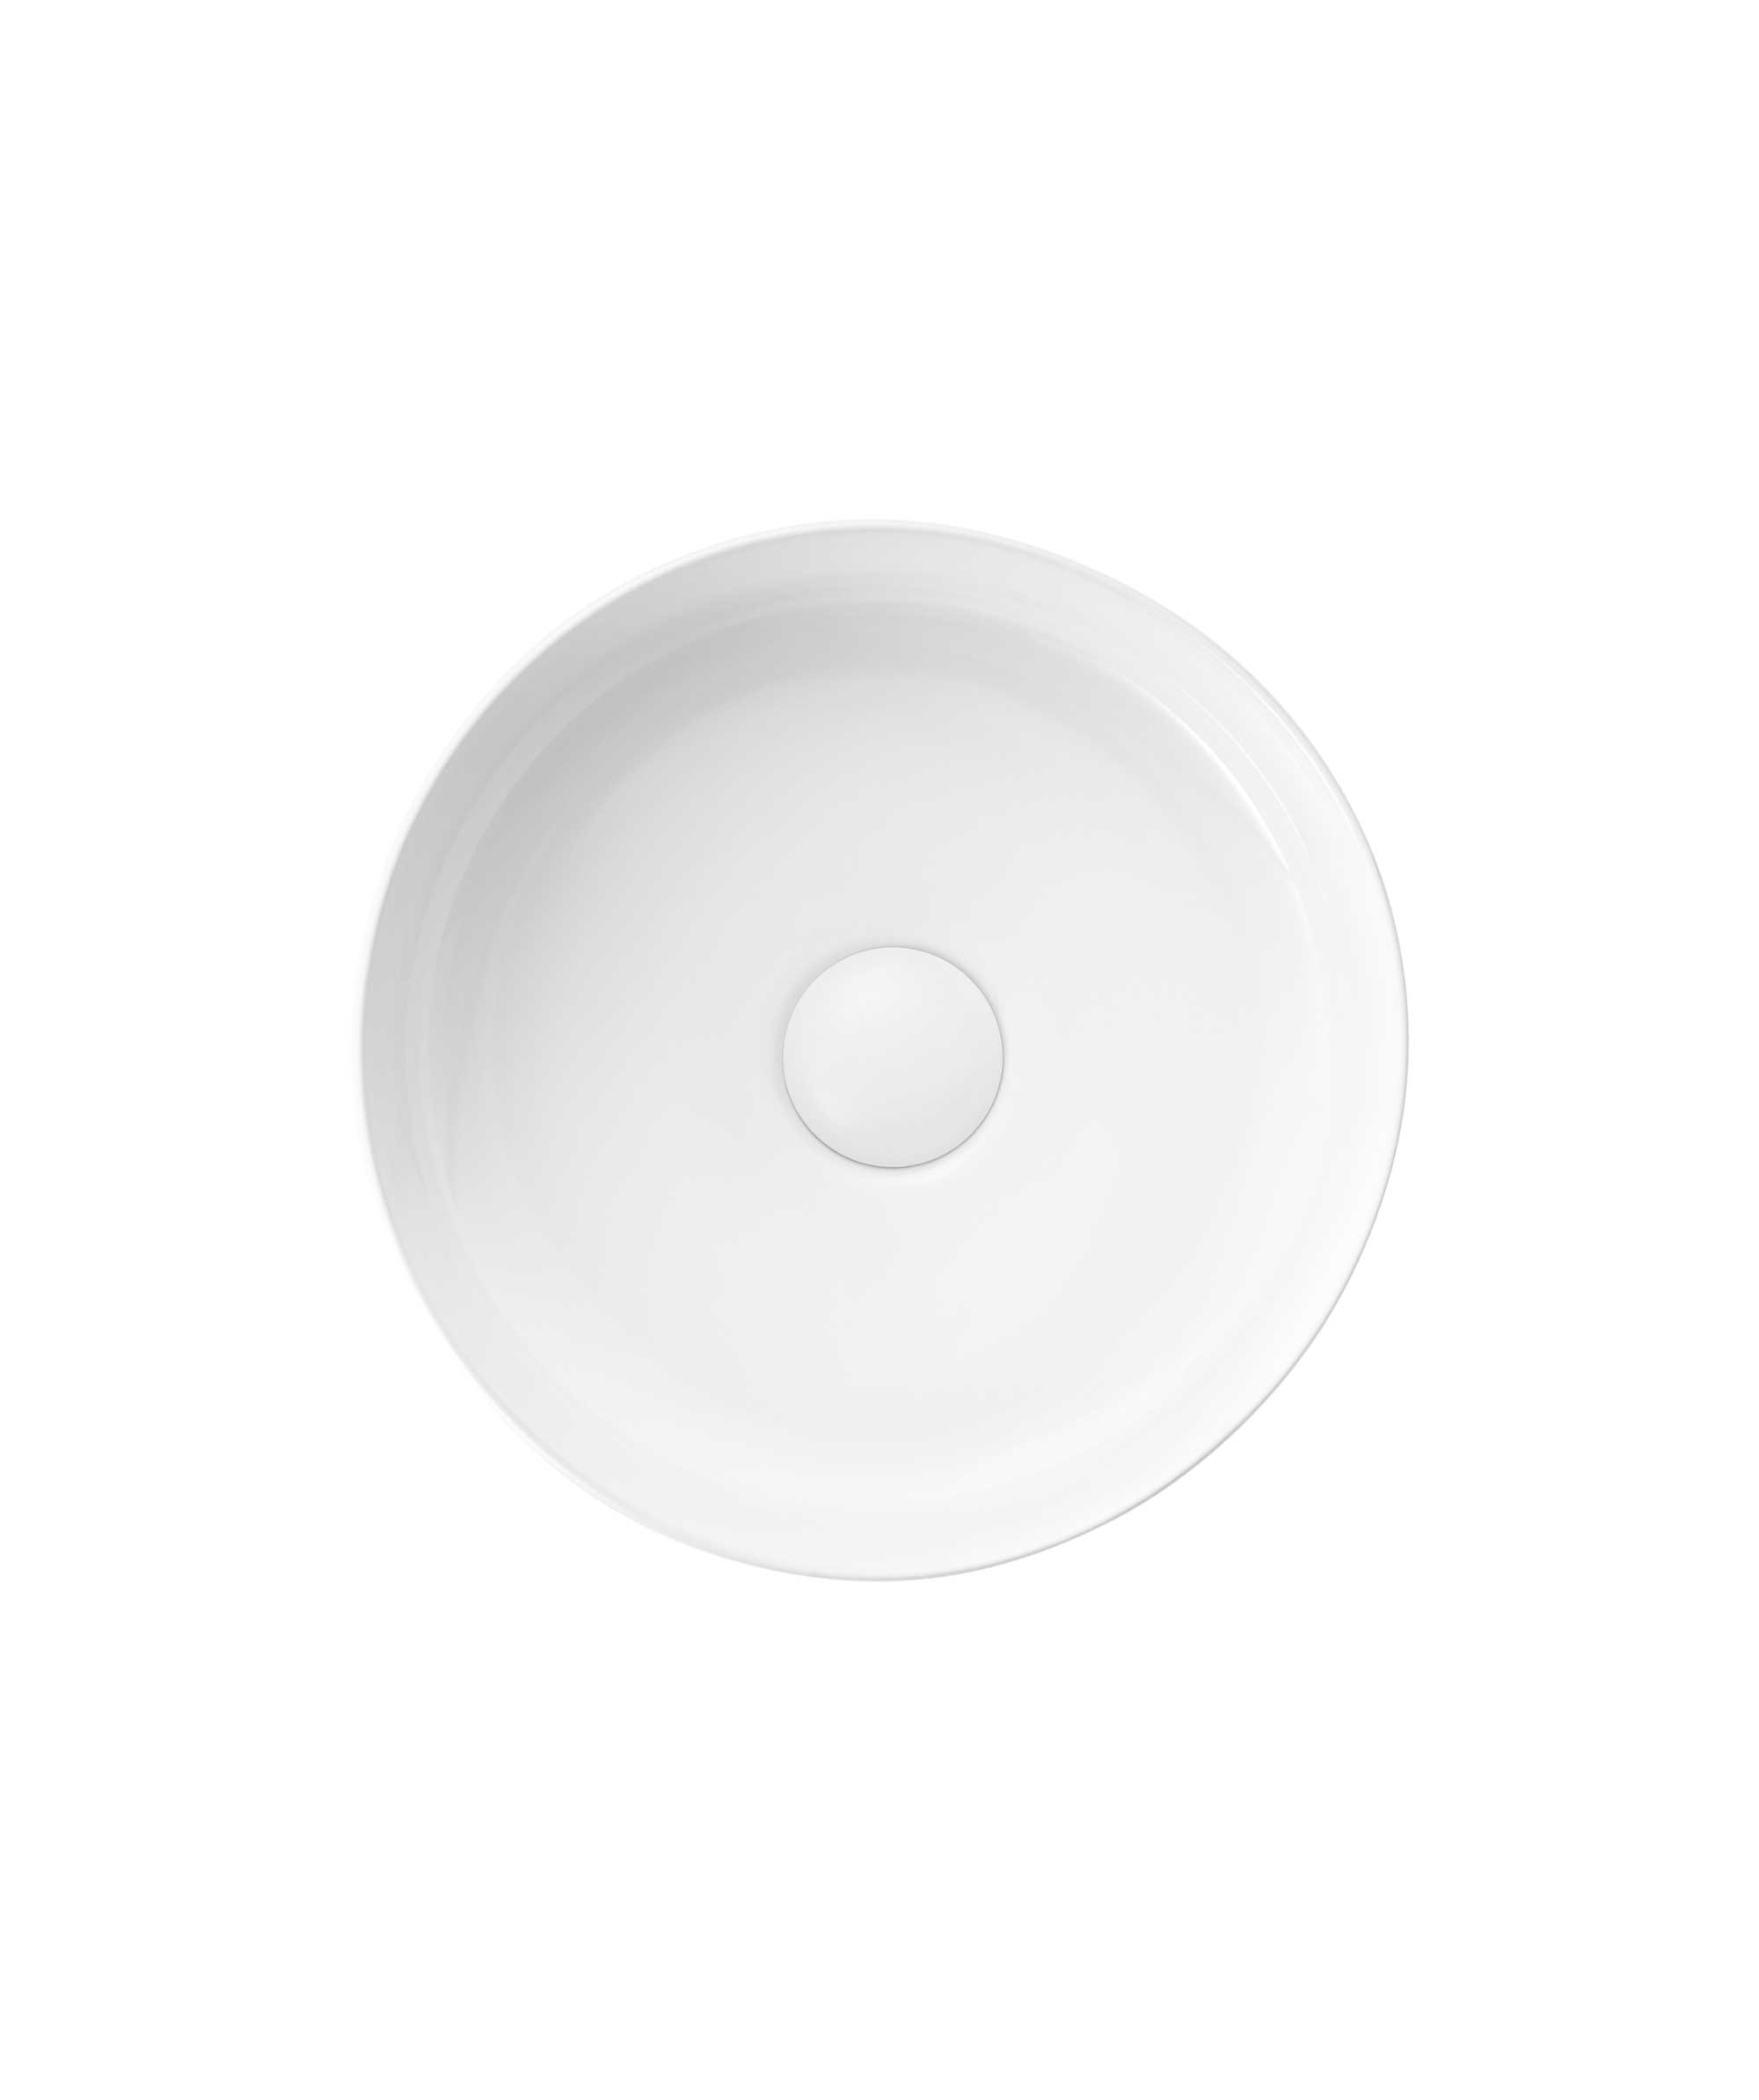 Arko 310 - White Gloss - compact size | Seima